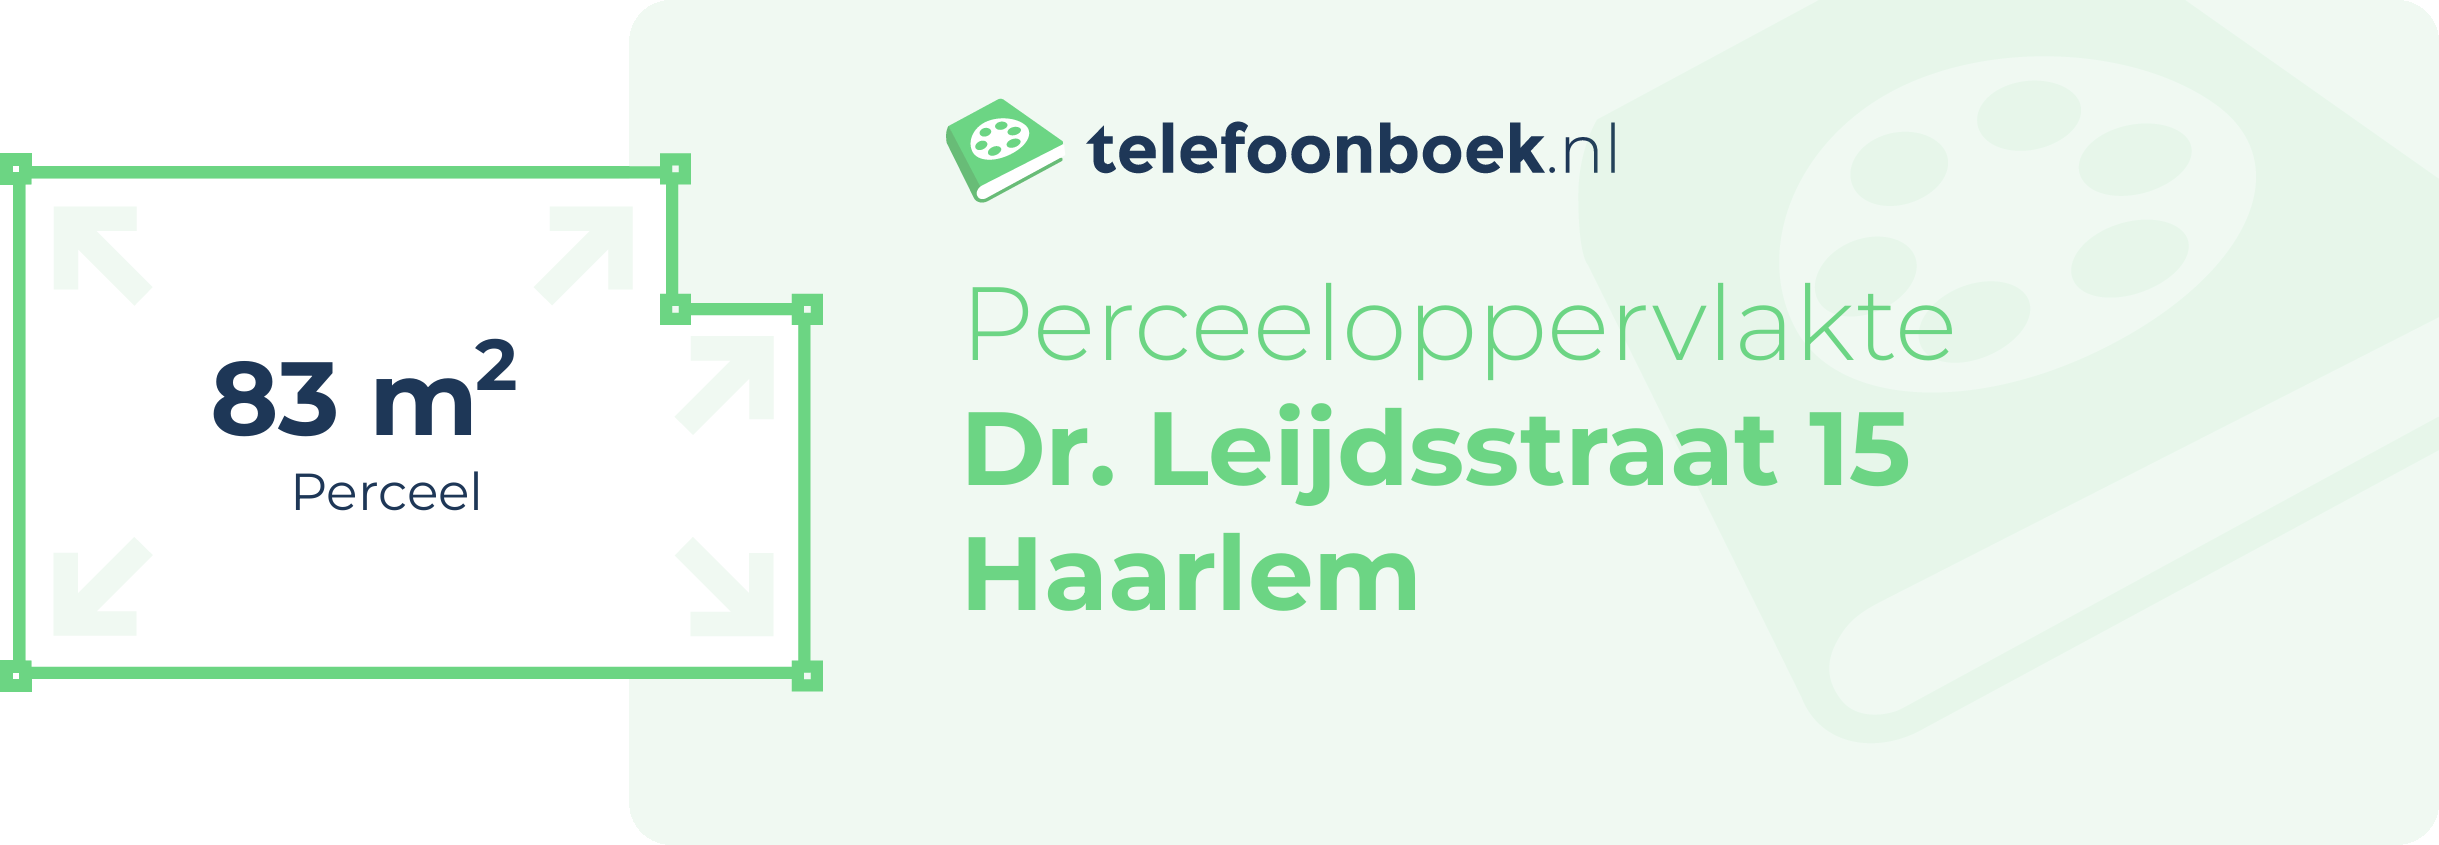 Perceeloppervlakte Dr. Leijdsstraat 15 Haarlem